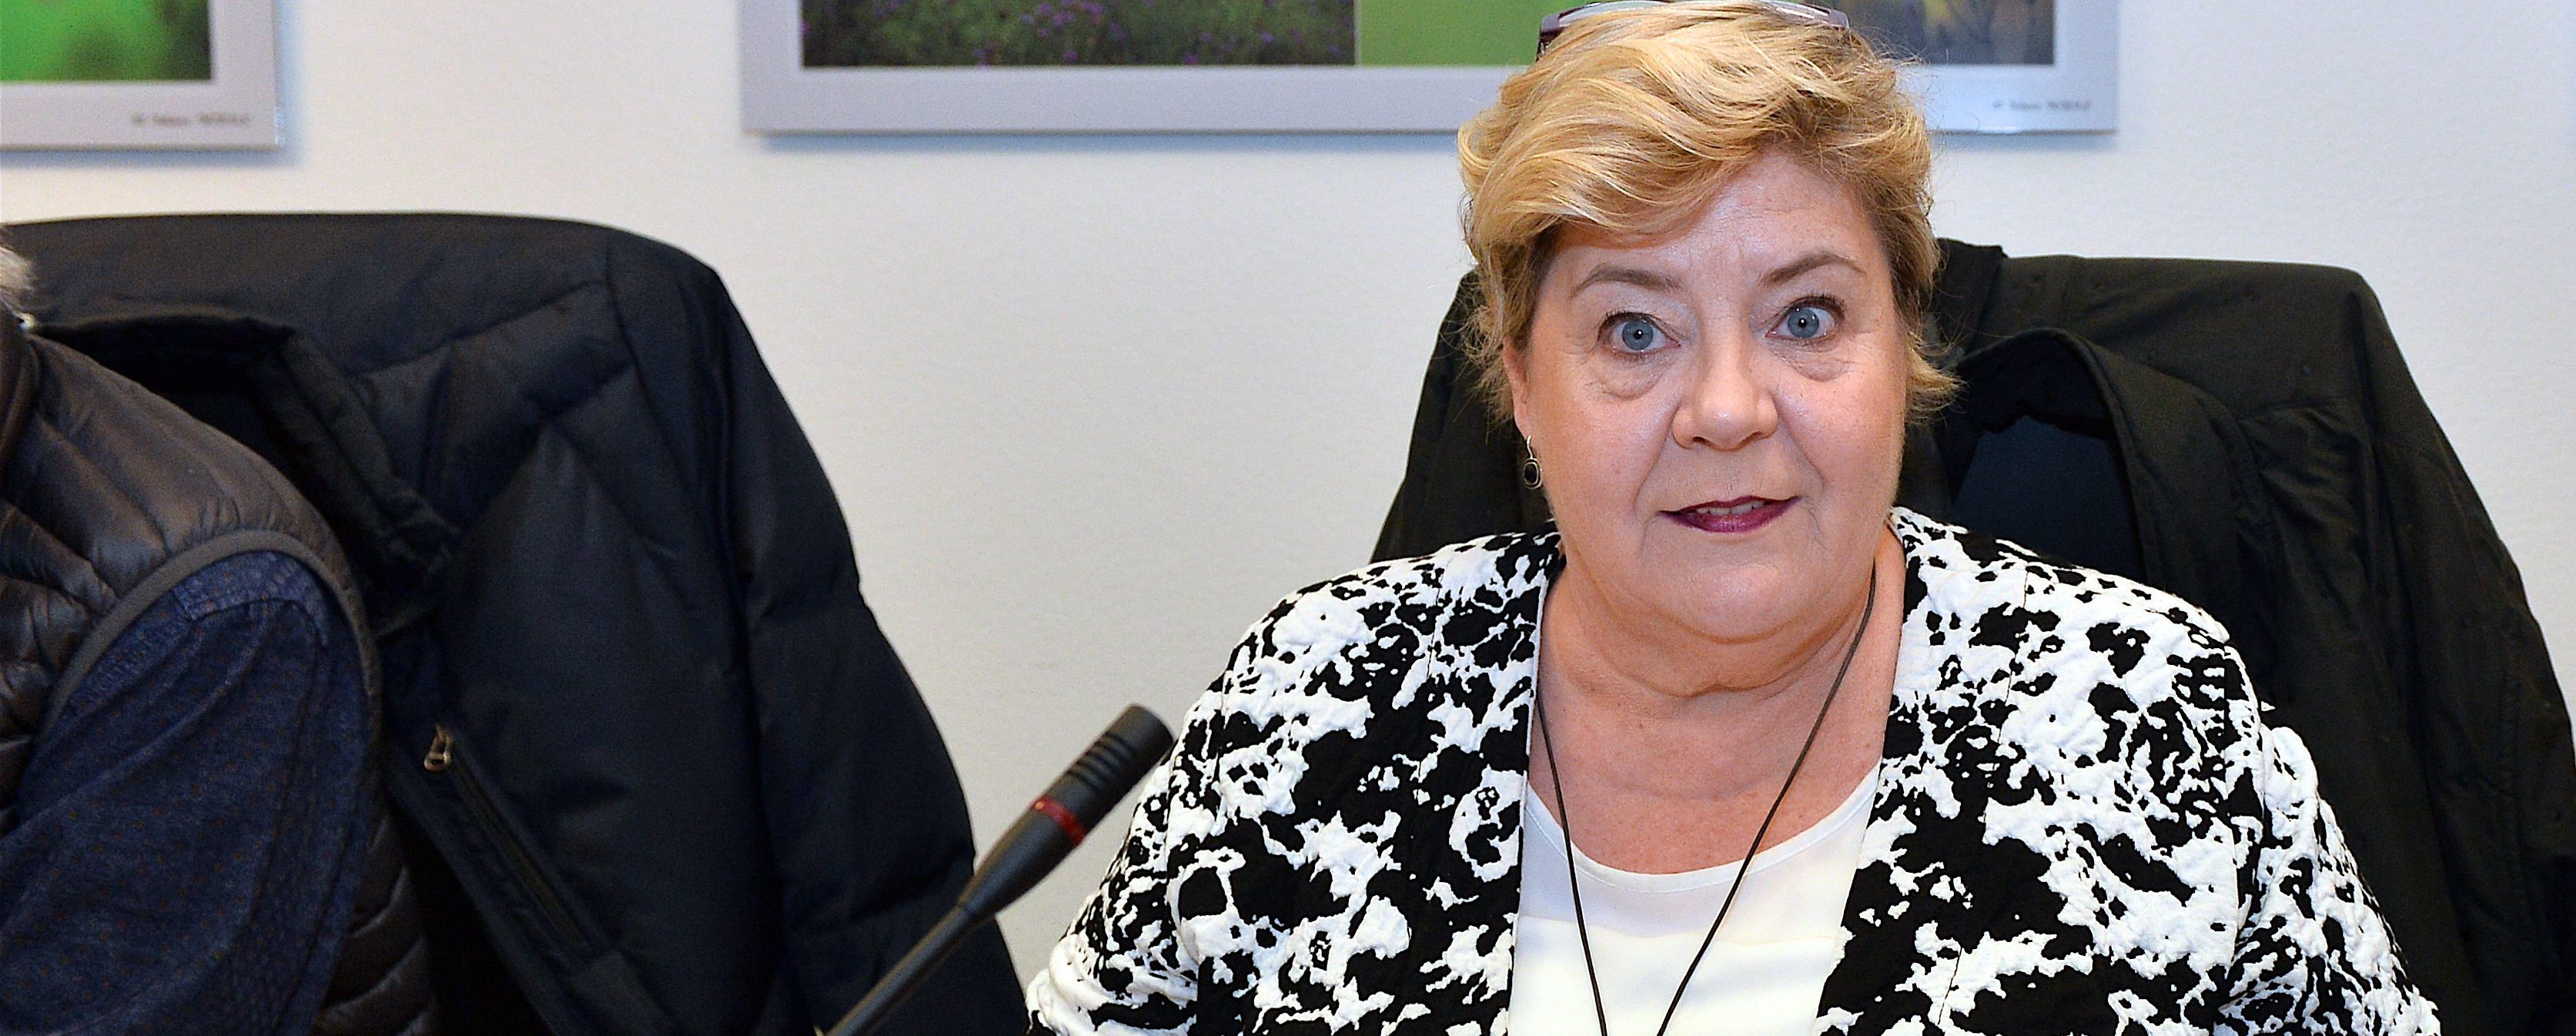 Christiane Brassel-Rausch ist die neue Bürgermeisterin von Differdingen